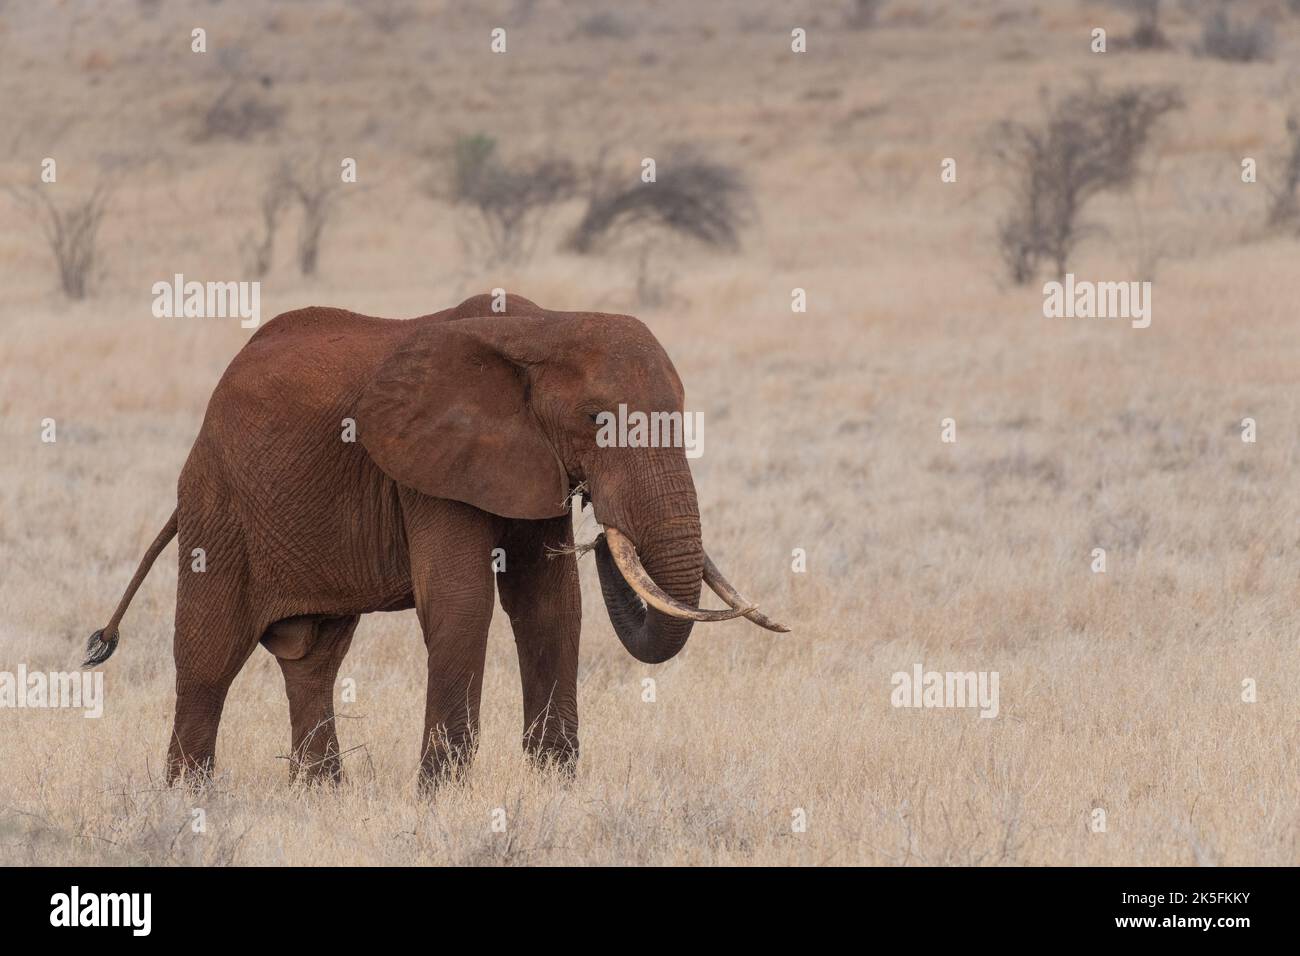 African Elephant, Loxodonta africana, Elephantidae, Tsavo East National Park, Kenya, Africa Stock Photo